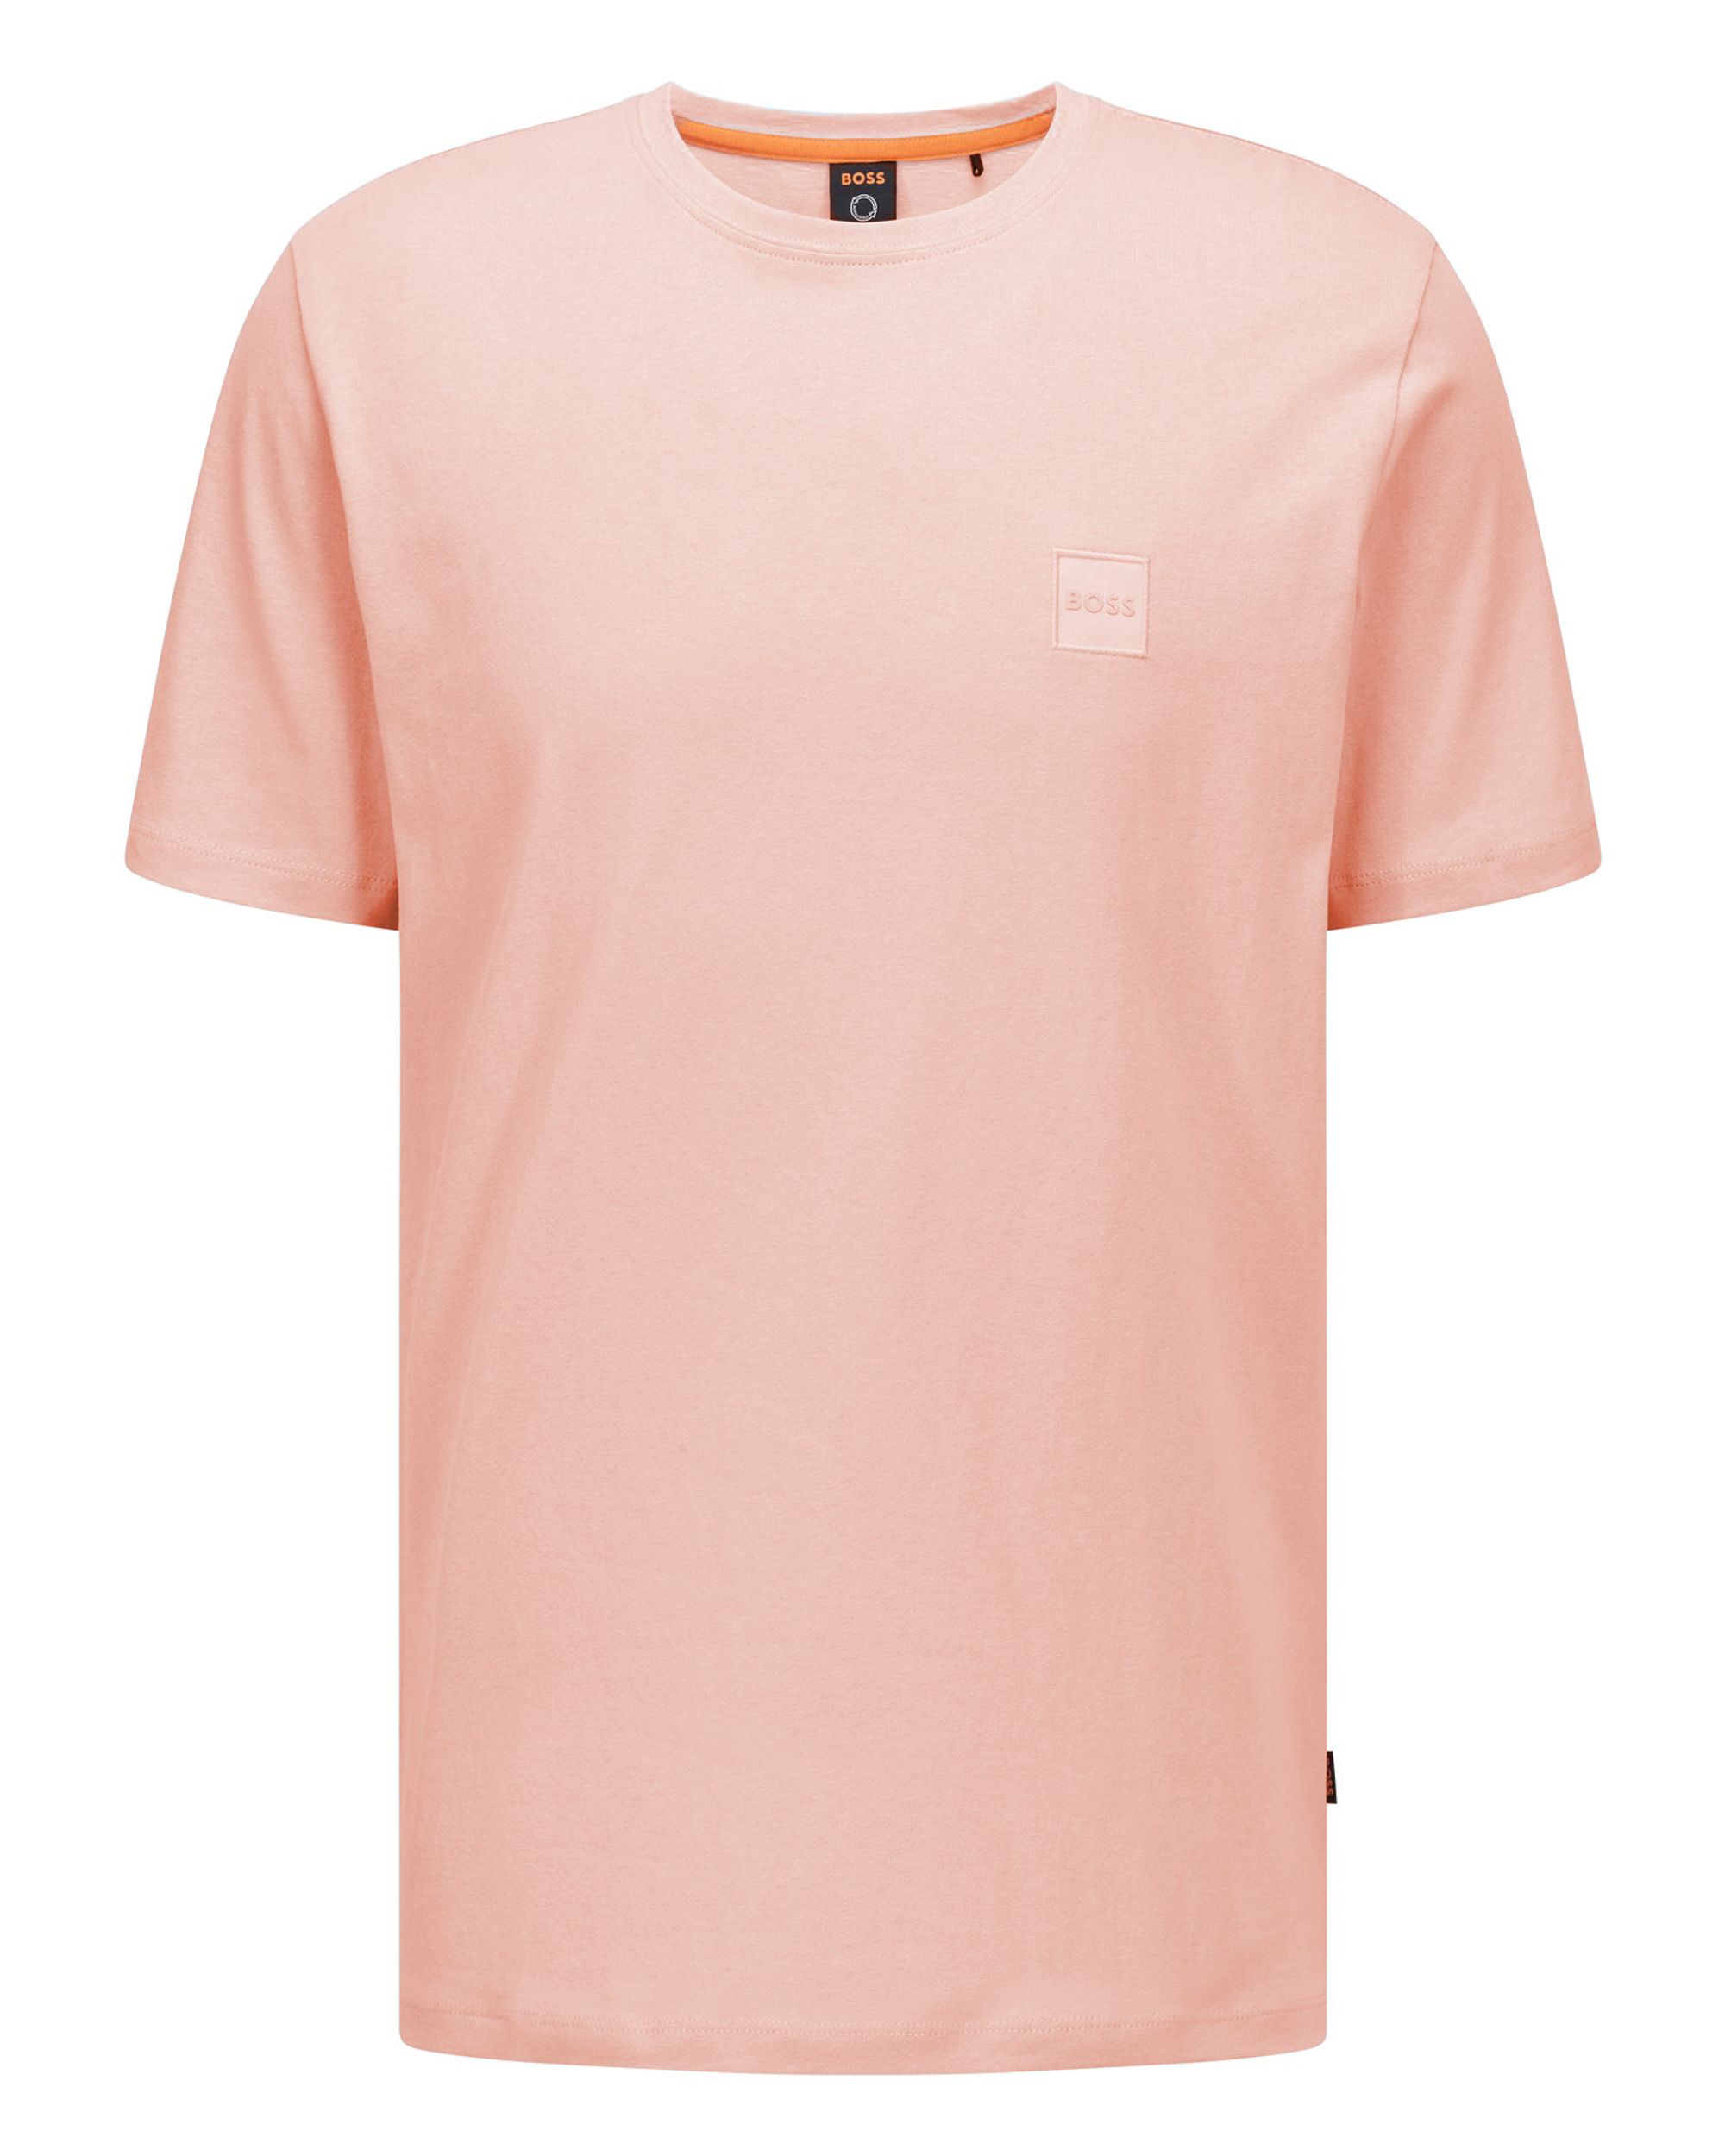 Hugo Boss Casual Tales T-shirt KM Oranje 080850-001-L